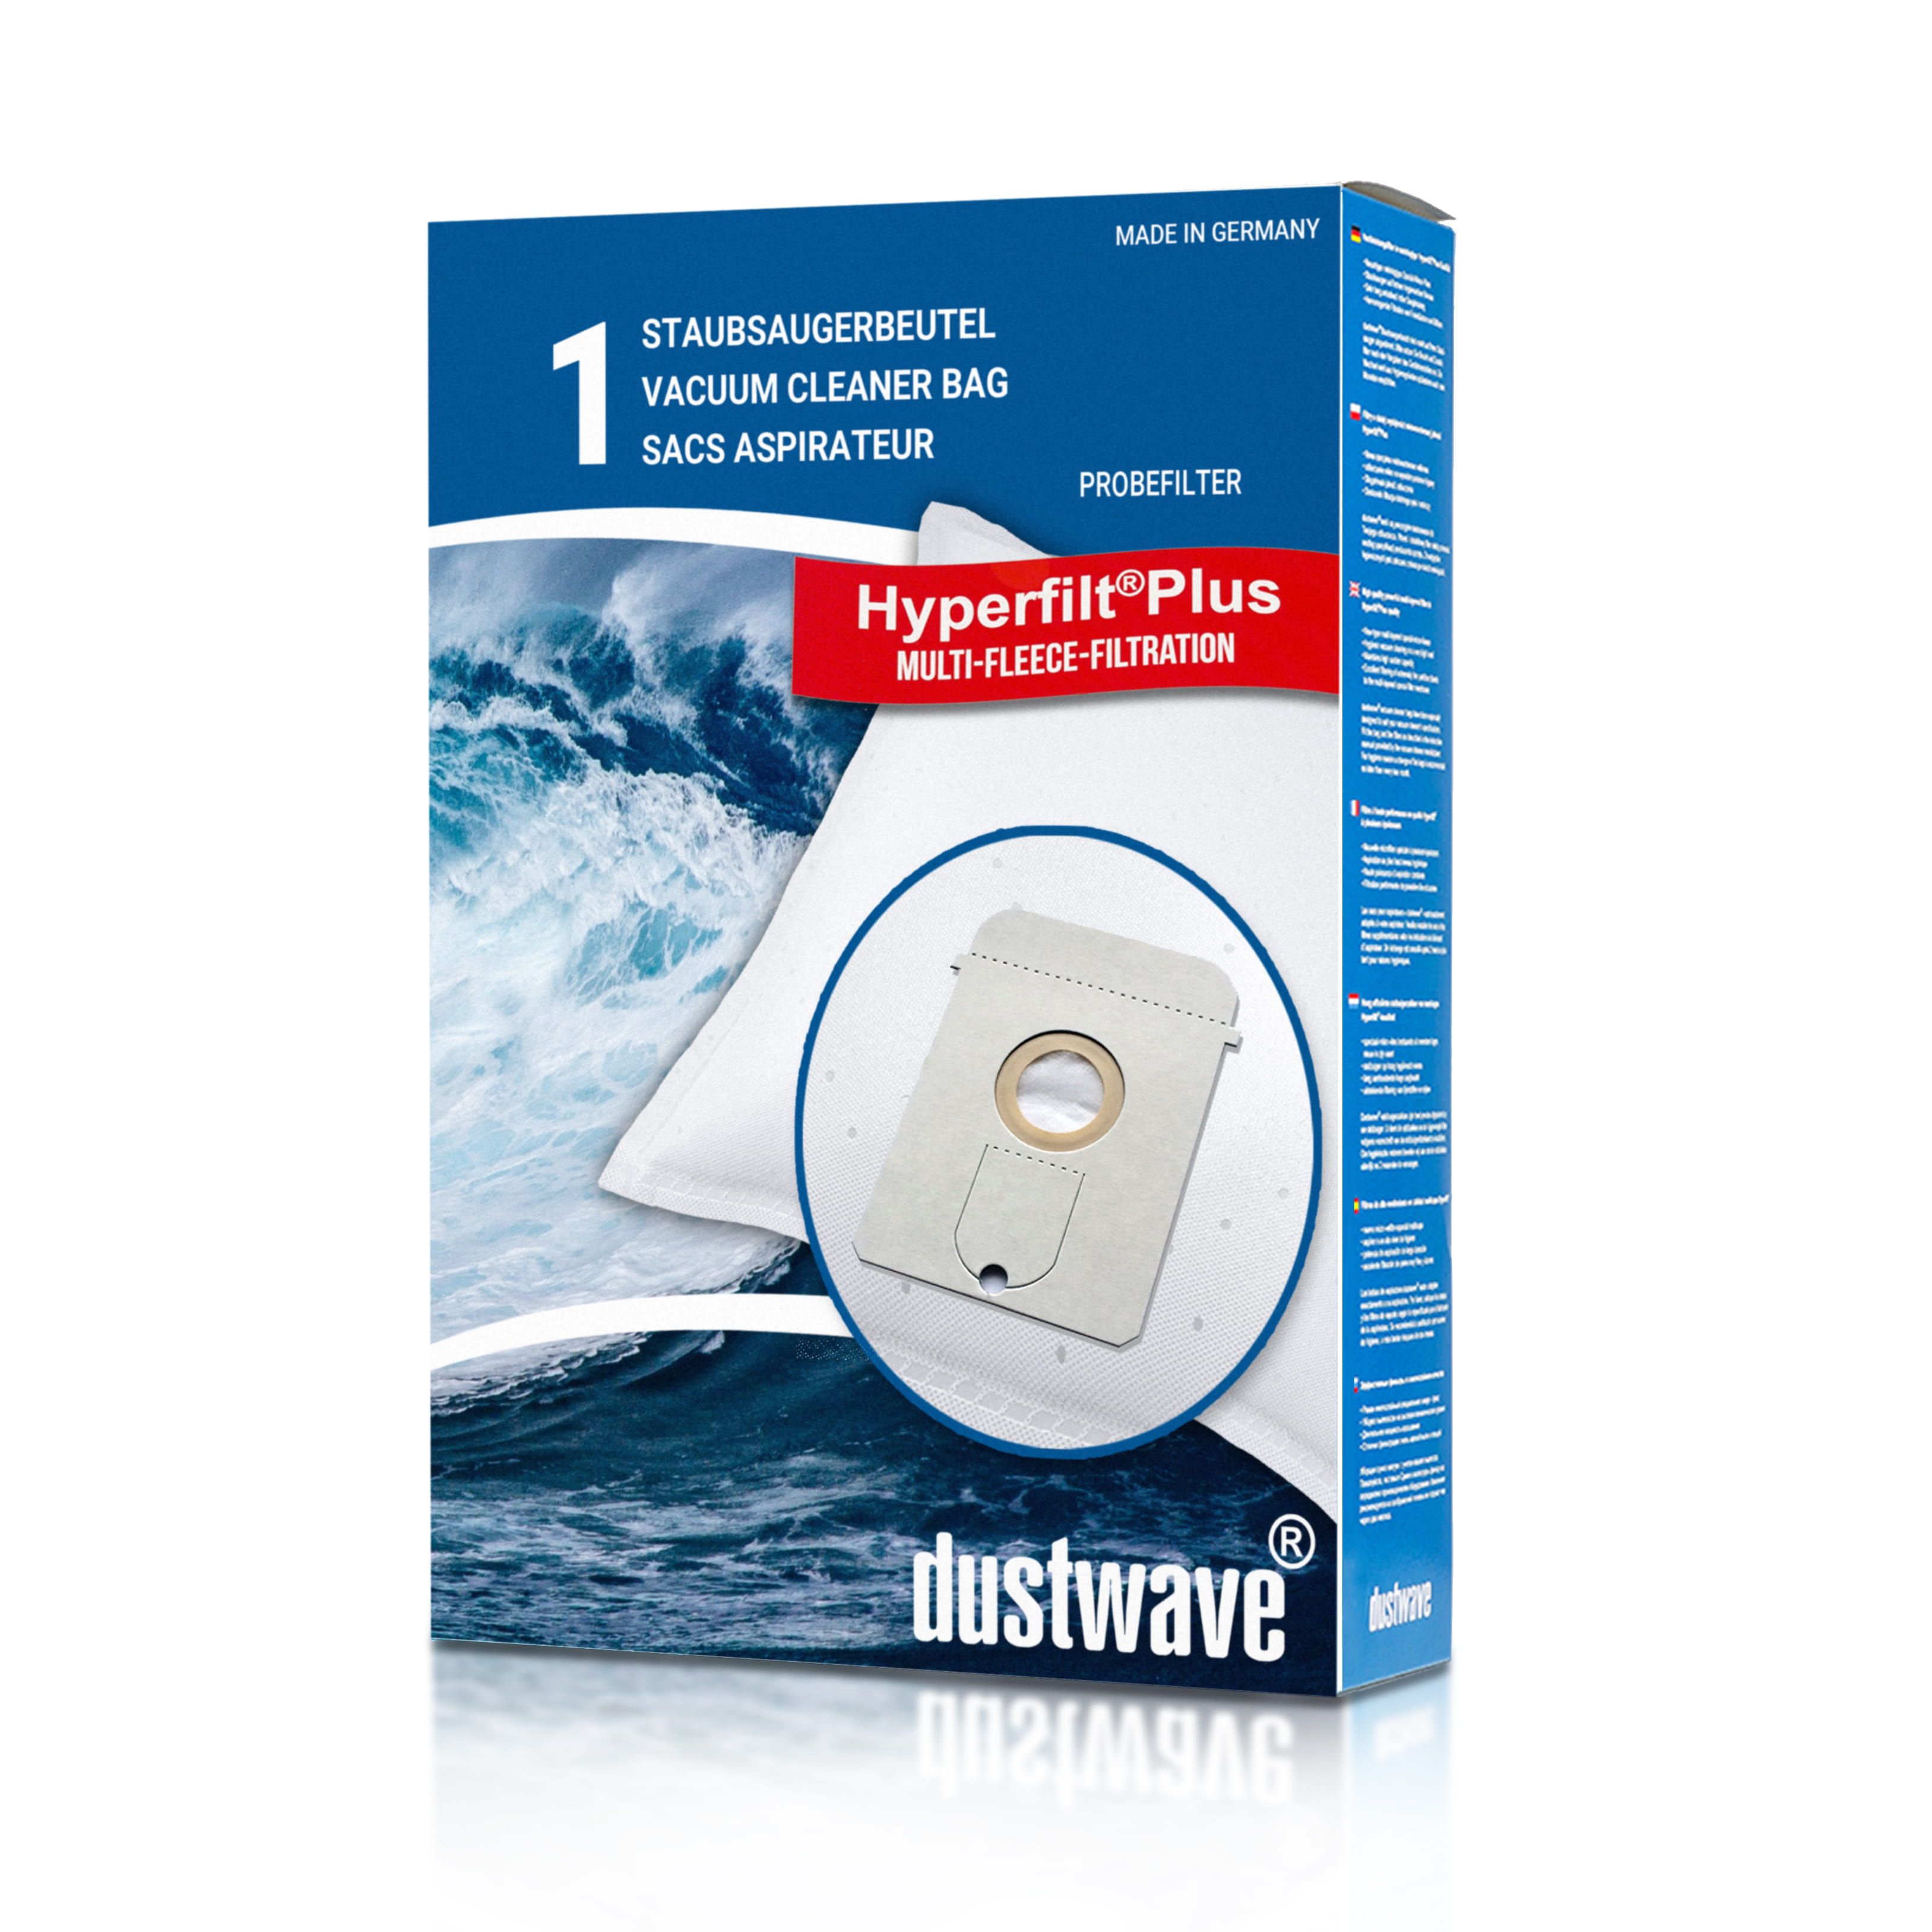 Dustwave® 1 Staubsaugerbeutel für AEG Vampyr 7700.5 - hocheffizient, mehrlagiges Mikrovlies mit Hygieneverschluss - Made in Germany